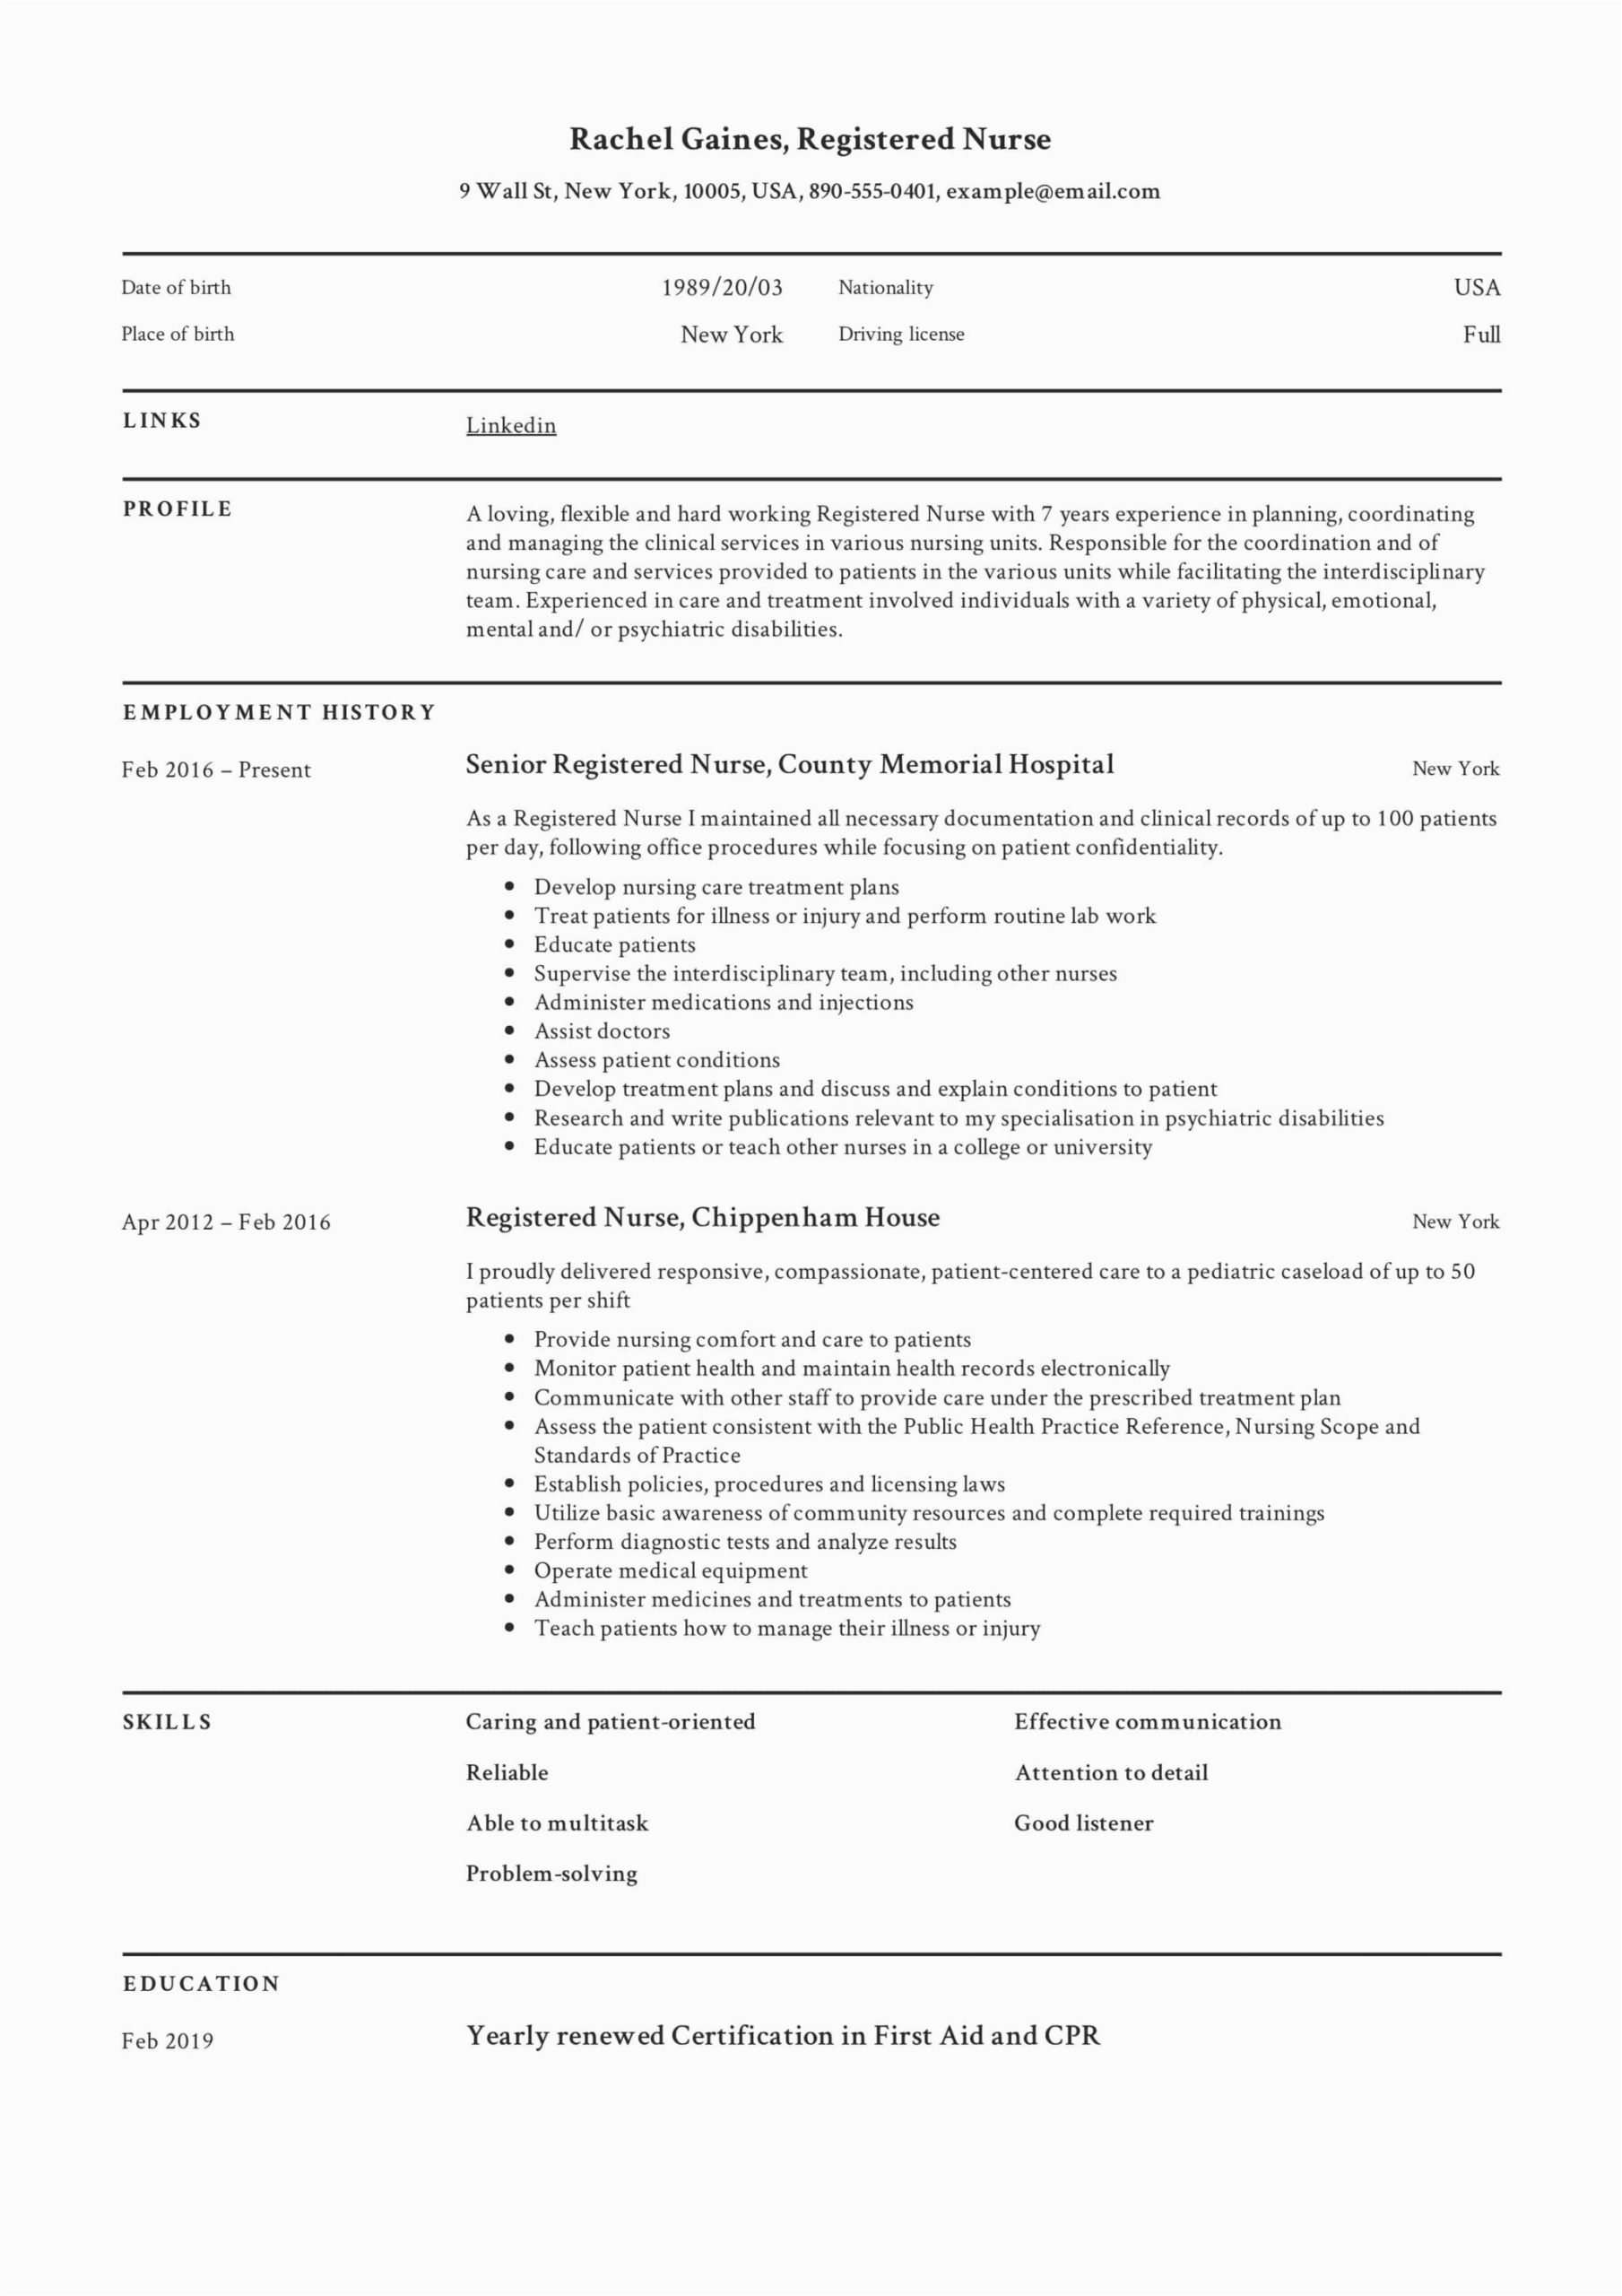 Free Resume Samples for Registered Nurses Registered Nurse Resume Sample & Writing Guide 12 Samples